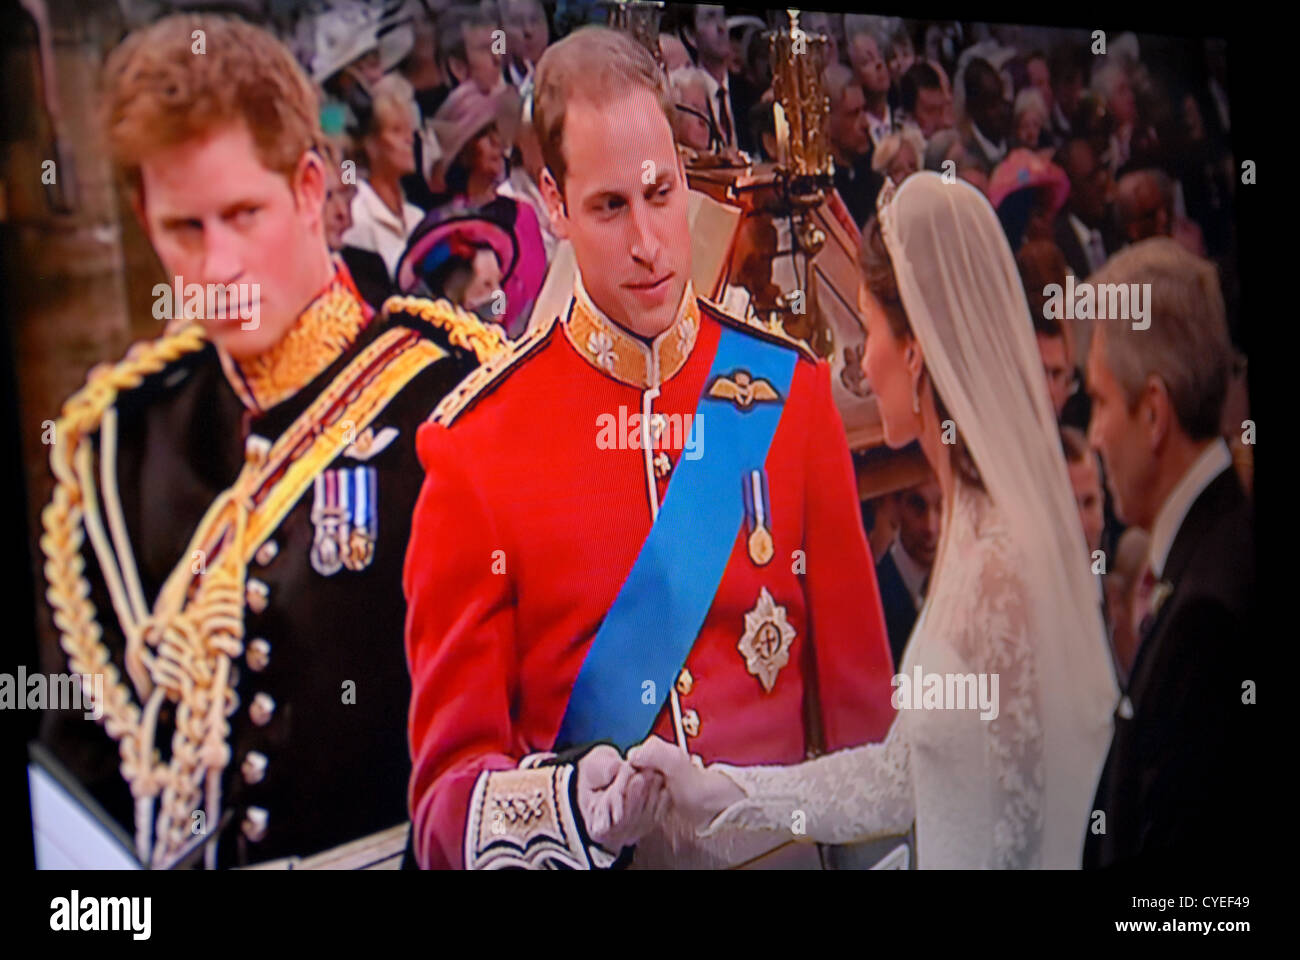 Mariage du Prince William et Catherine Middleton, duc et duchesse de Cambridge. Vendredi 29 avril 2011. TV / Nouvelle Capture. Banque D'Images